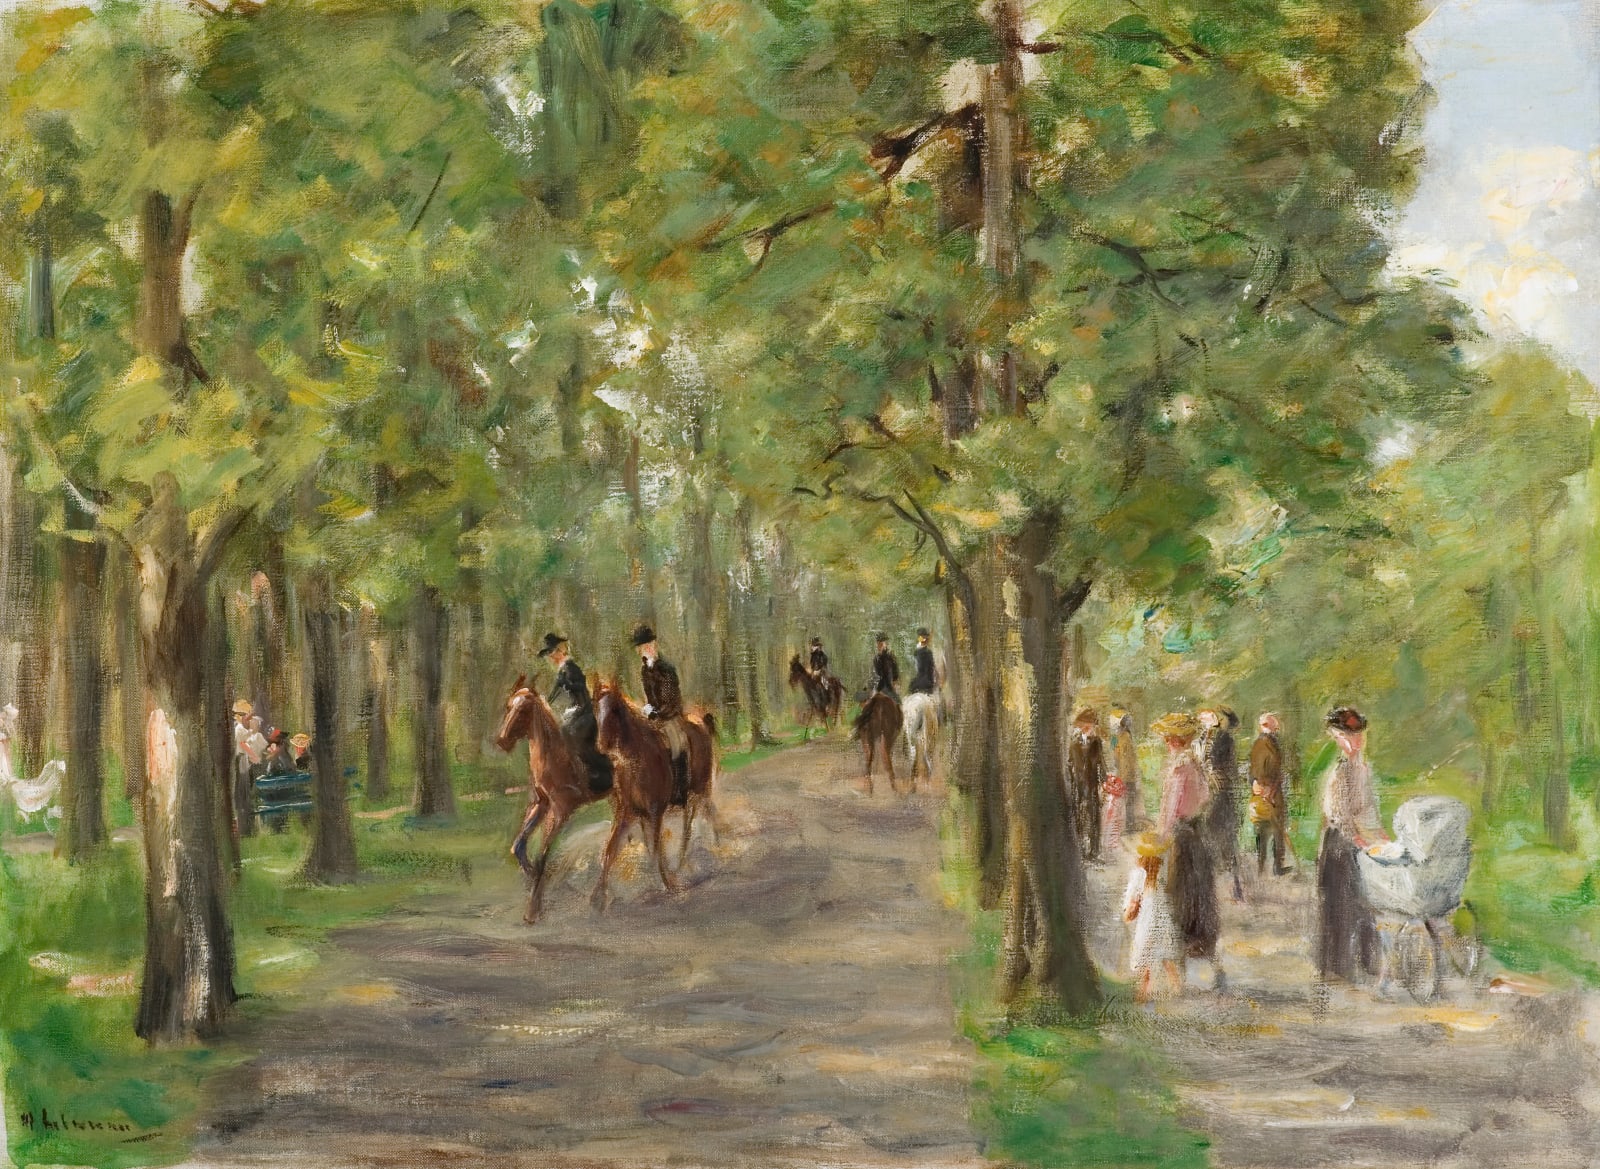 MAX LIEBERMANN, Allee im Tiergarten mit Reitern und Spaziergängern, 1923